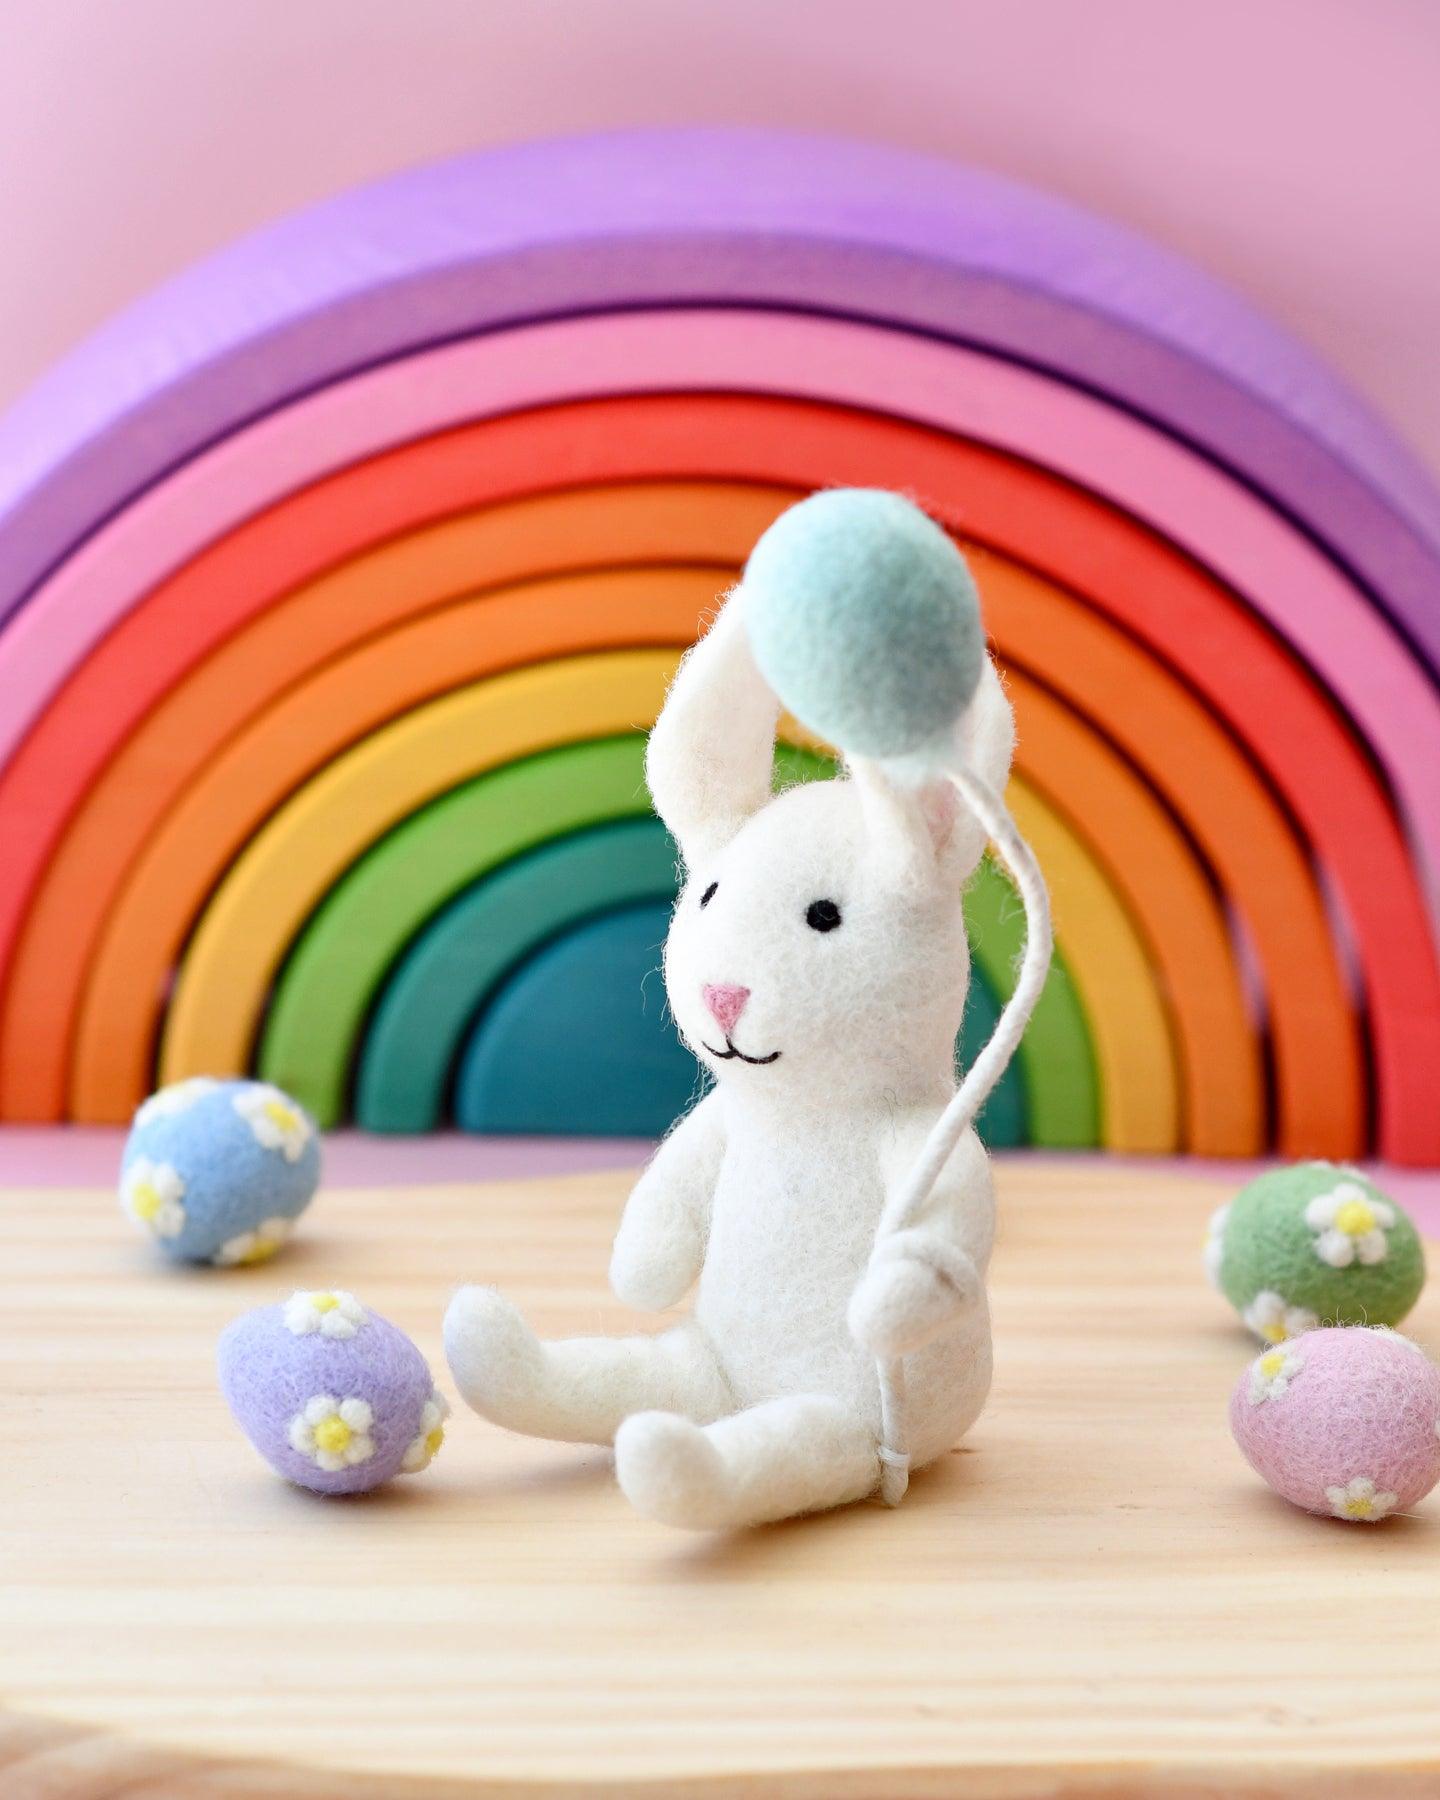 Felt Rabbit with Balloon Toy - Tara Treasures